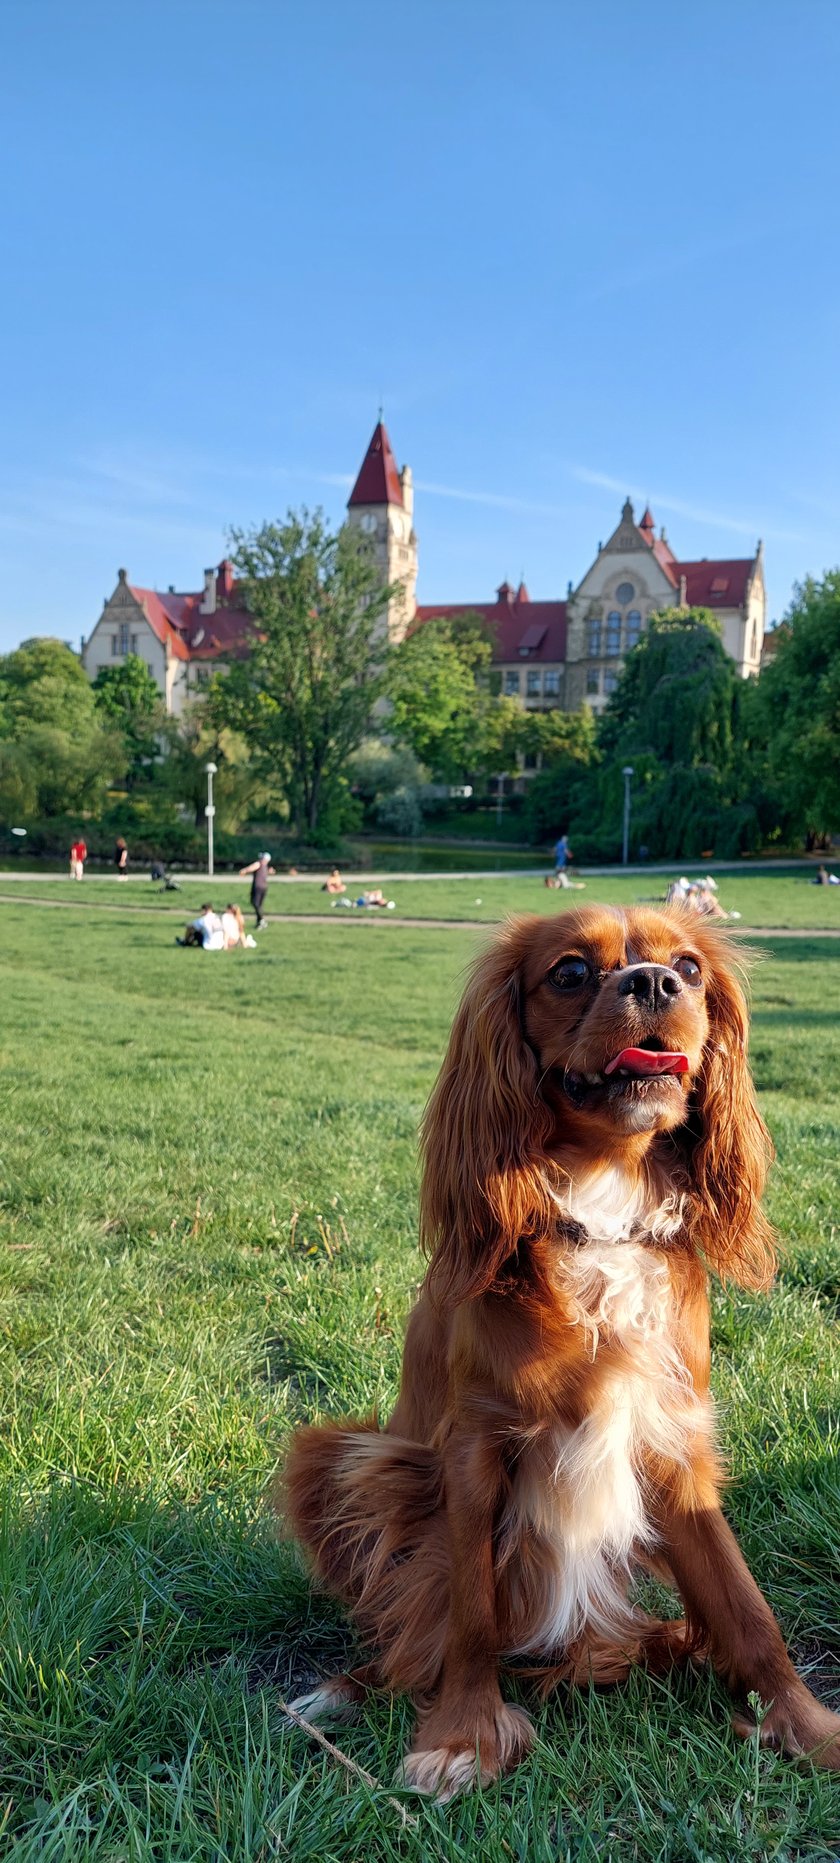 Tobi to nie tylko koneser psich smaczków, ale również długich spacerów po wrocławskich parkach.